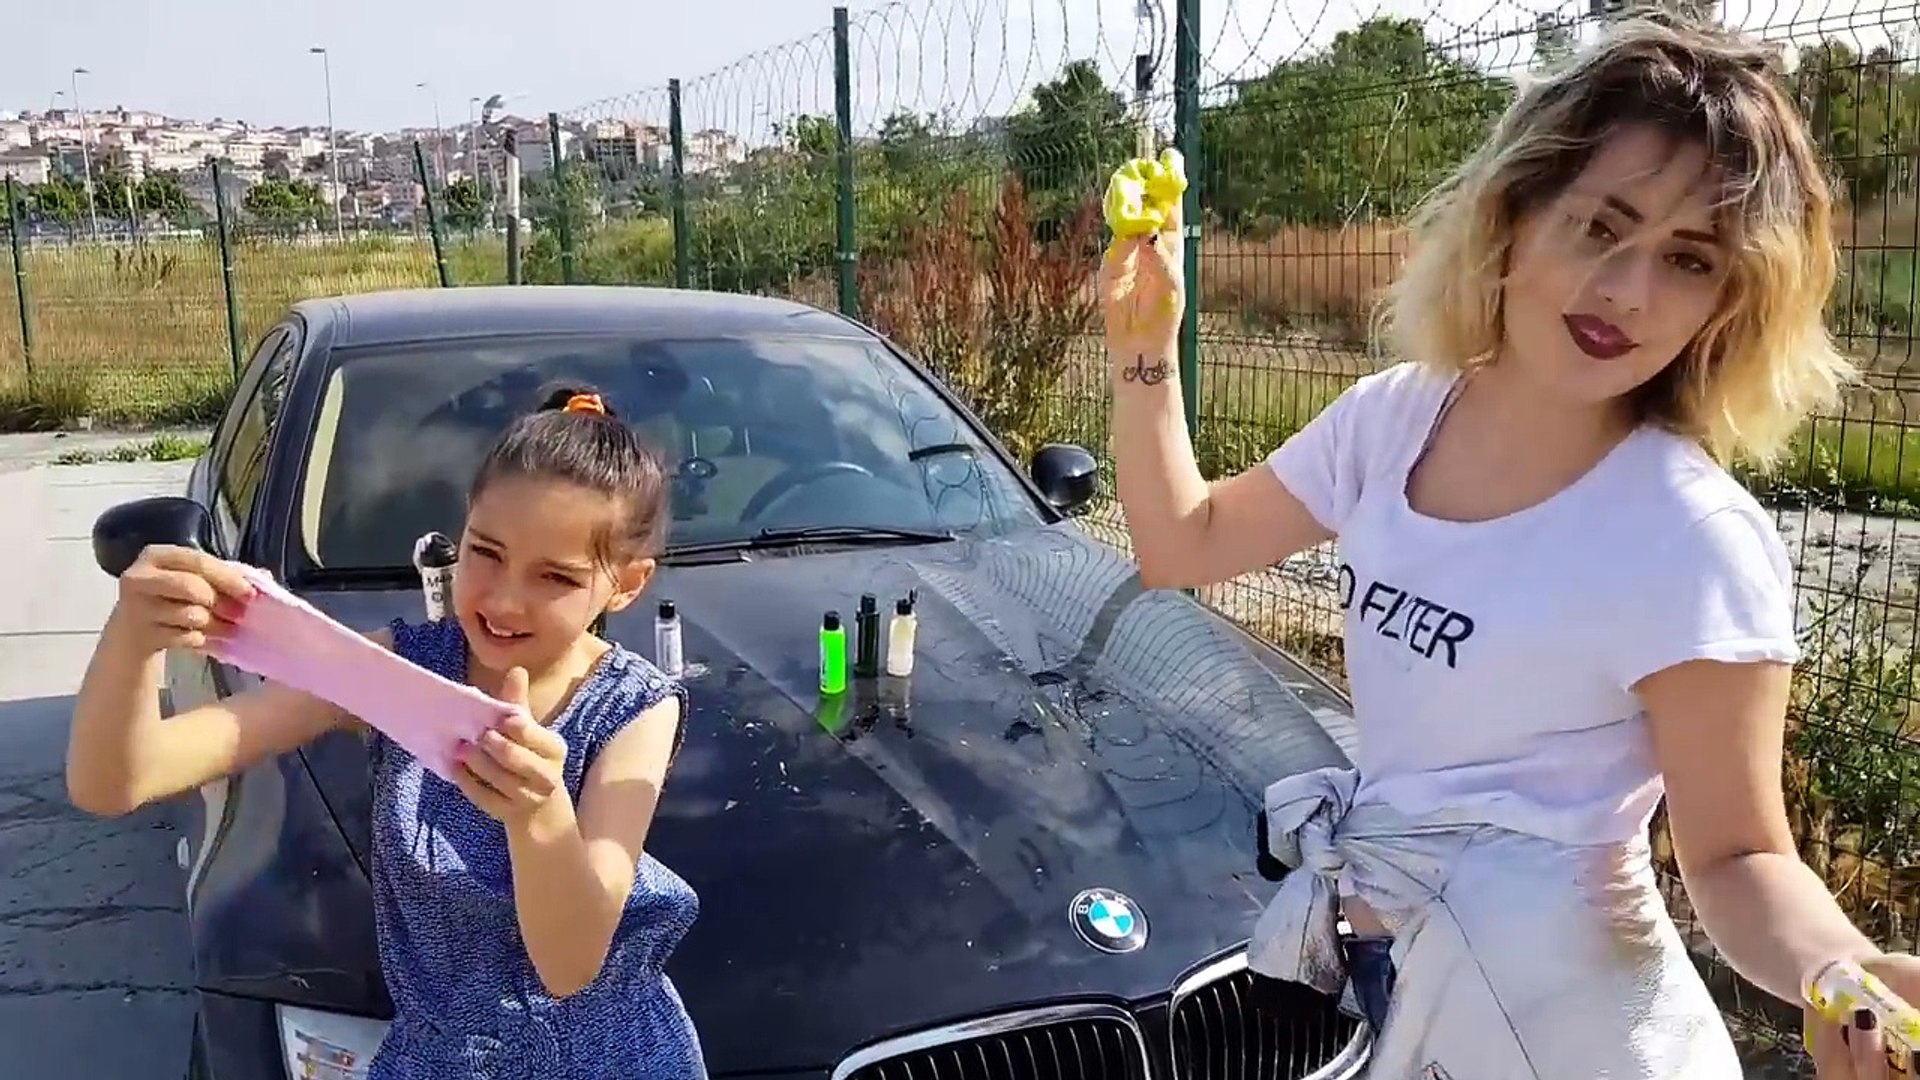 Babamın Arabasının Üzerinde En Güzel Slime Yarışması !! Gitti Güzelim Araba  - video Dailymotion